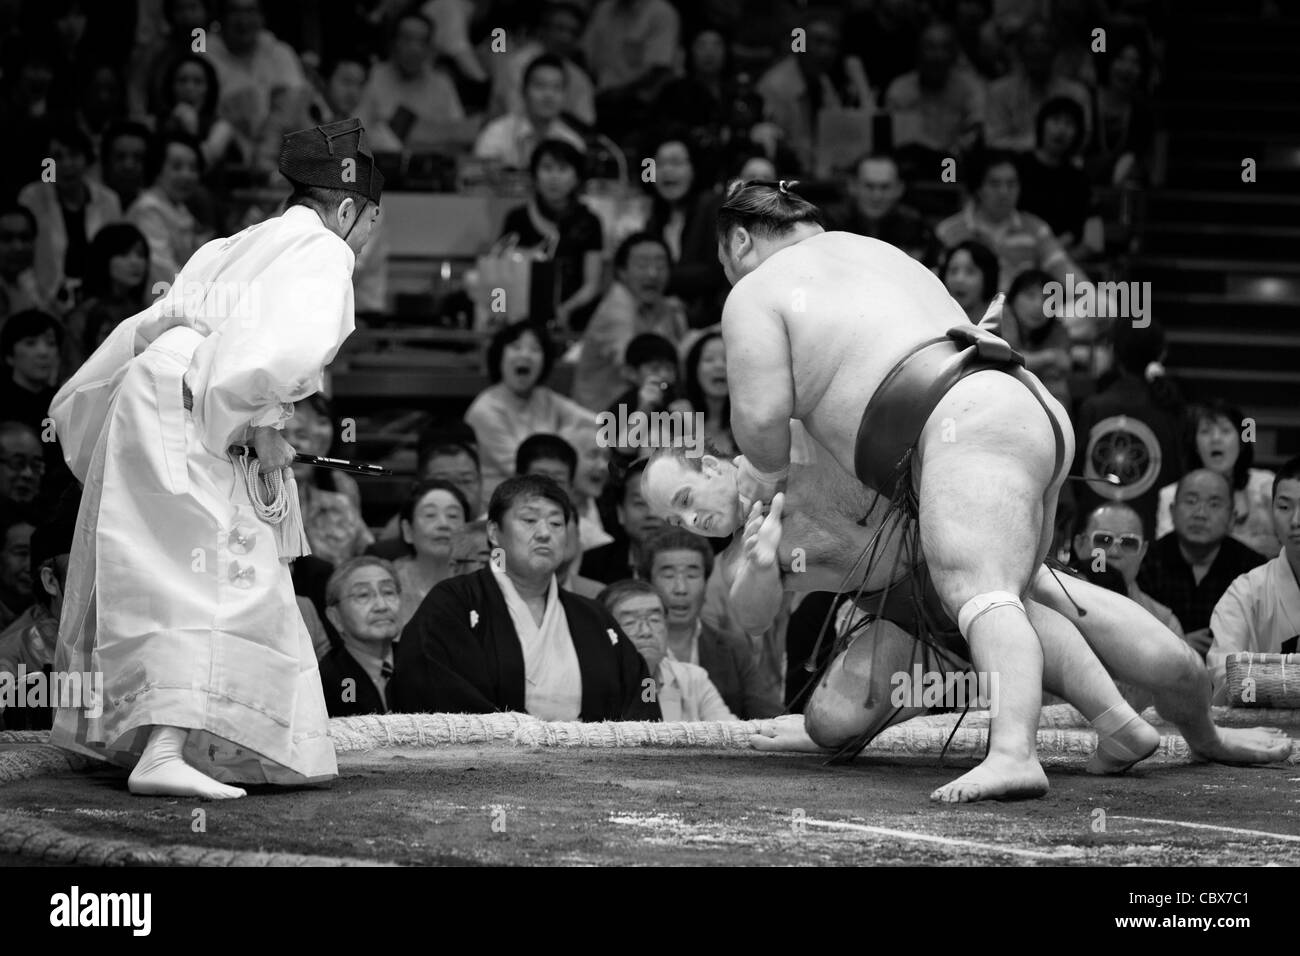 République tchèque lutteur de sumo takanoyama étant jeté à terre - Ryogoku Kokugikan, Tokyo, Japon Banque D'Images